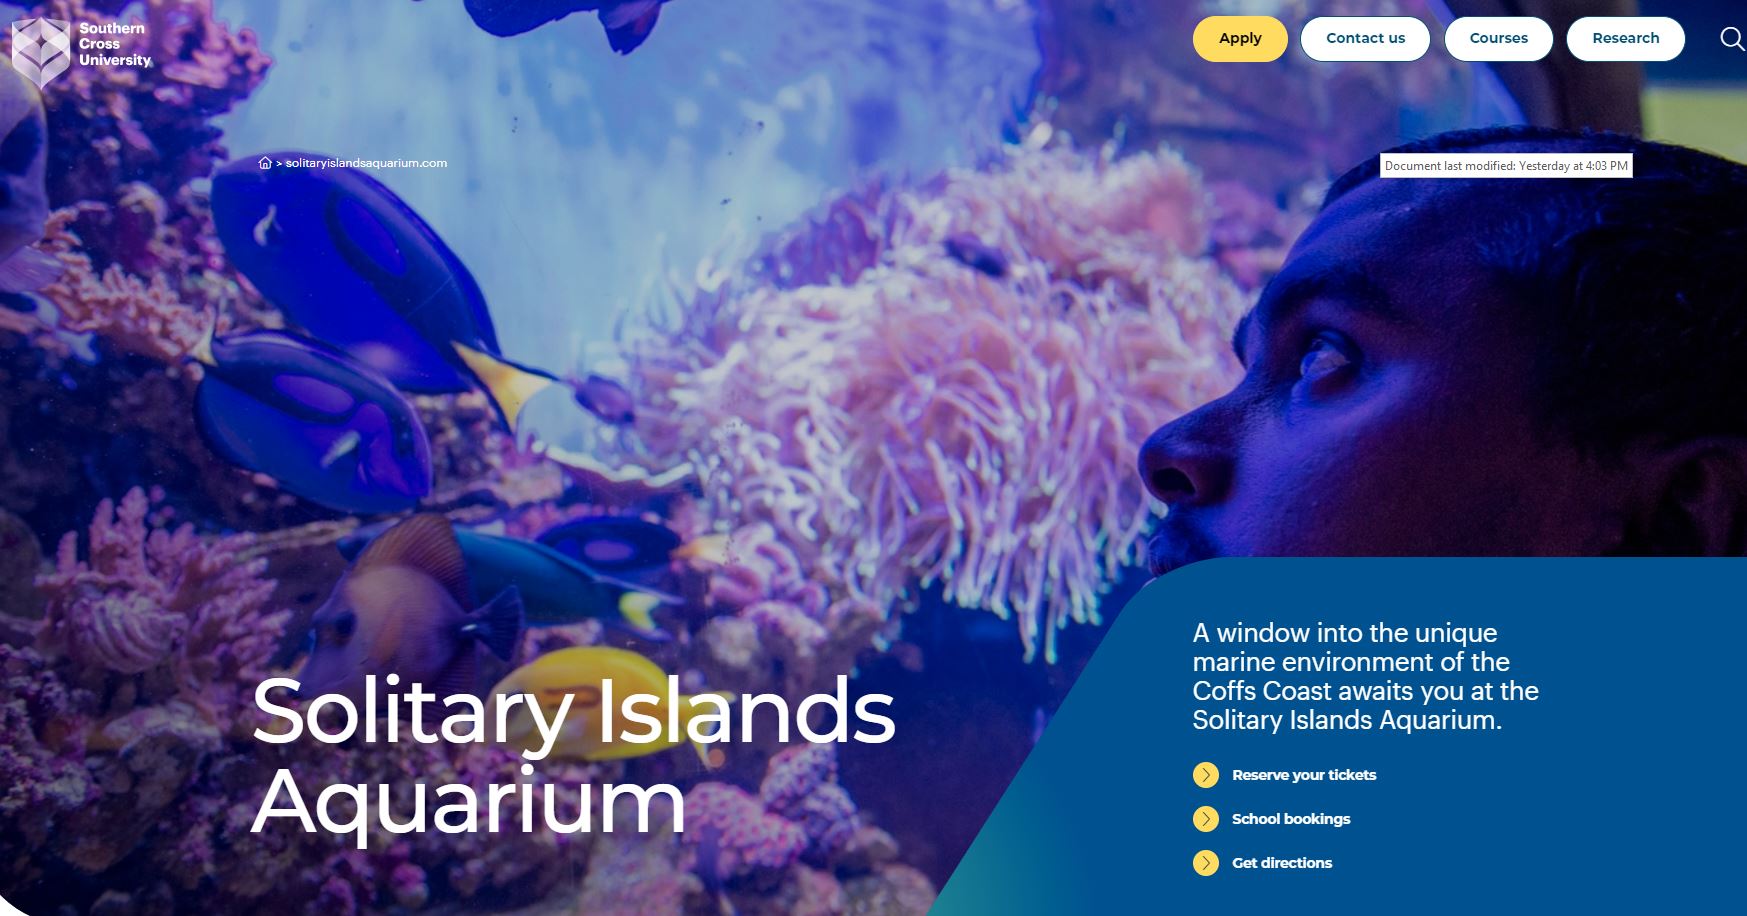 Solitray islands aquarium